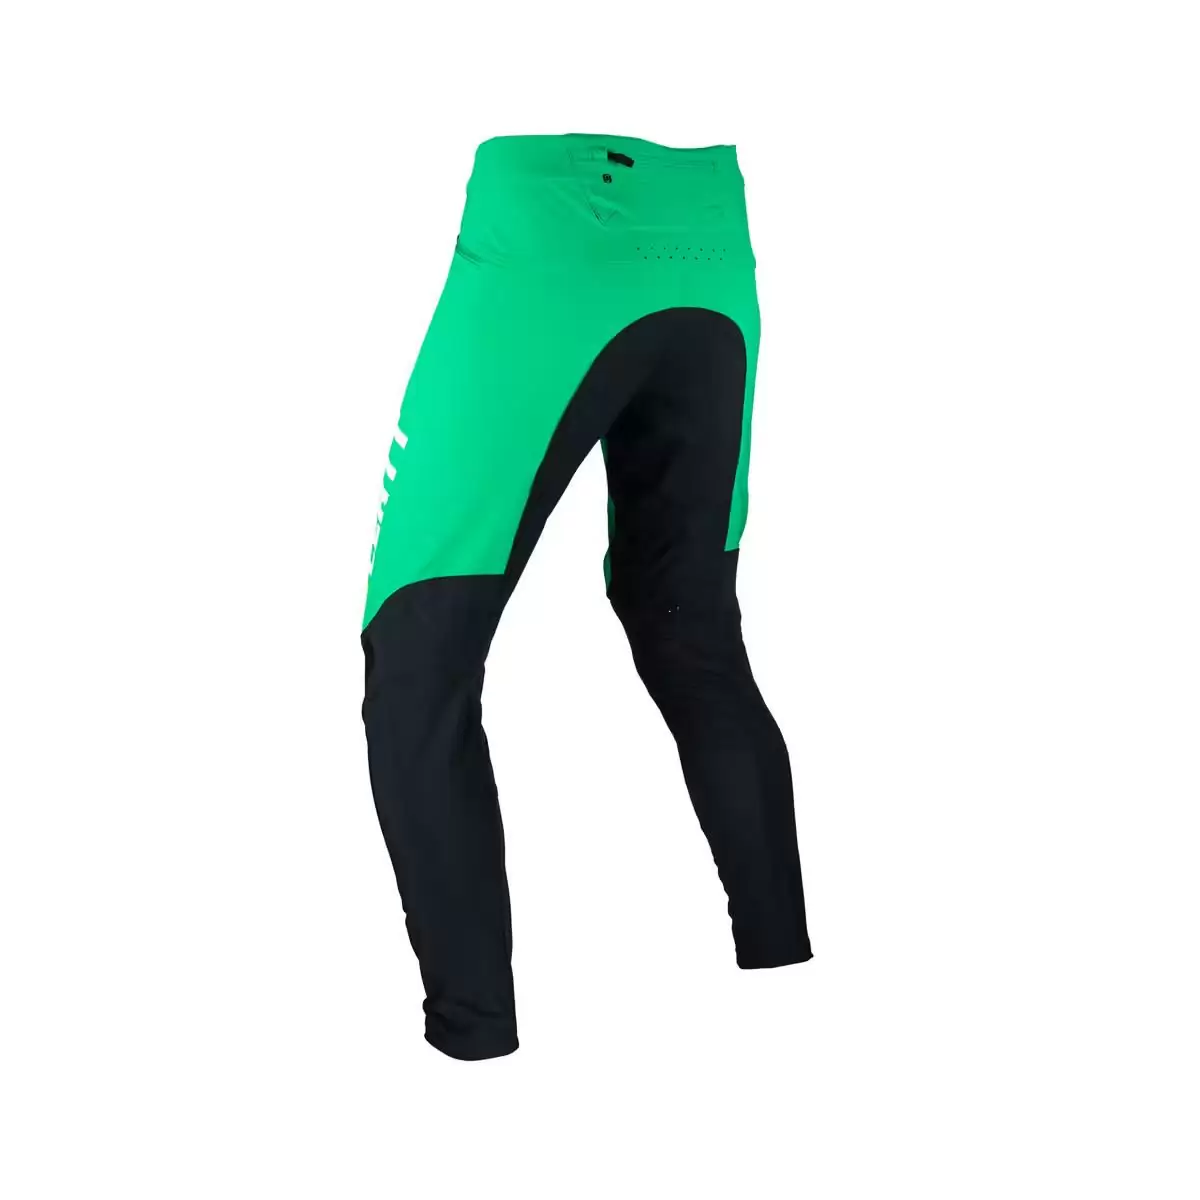 Gravity 4.0 MTB Long Pants Black/Green Size M #3